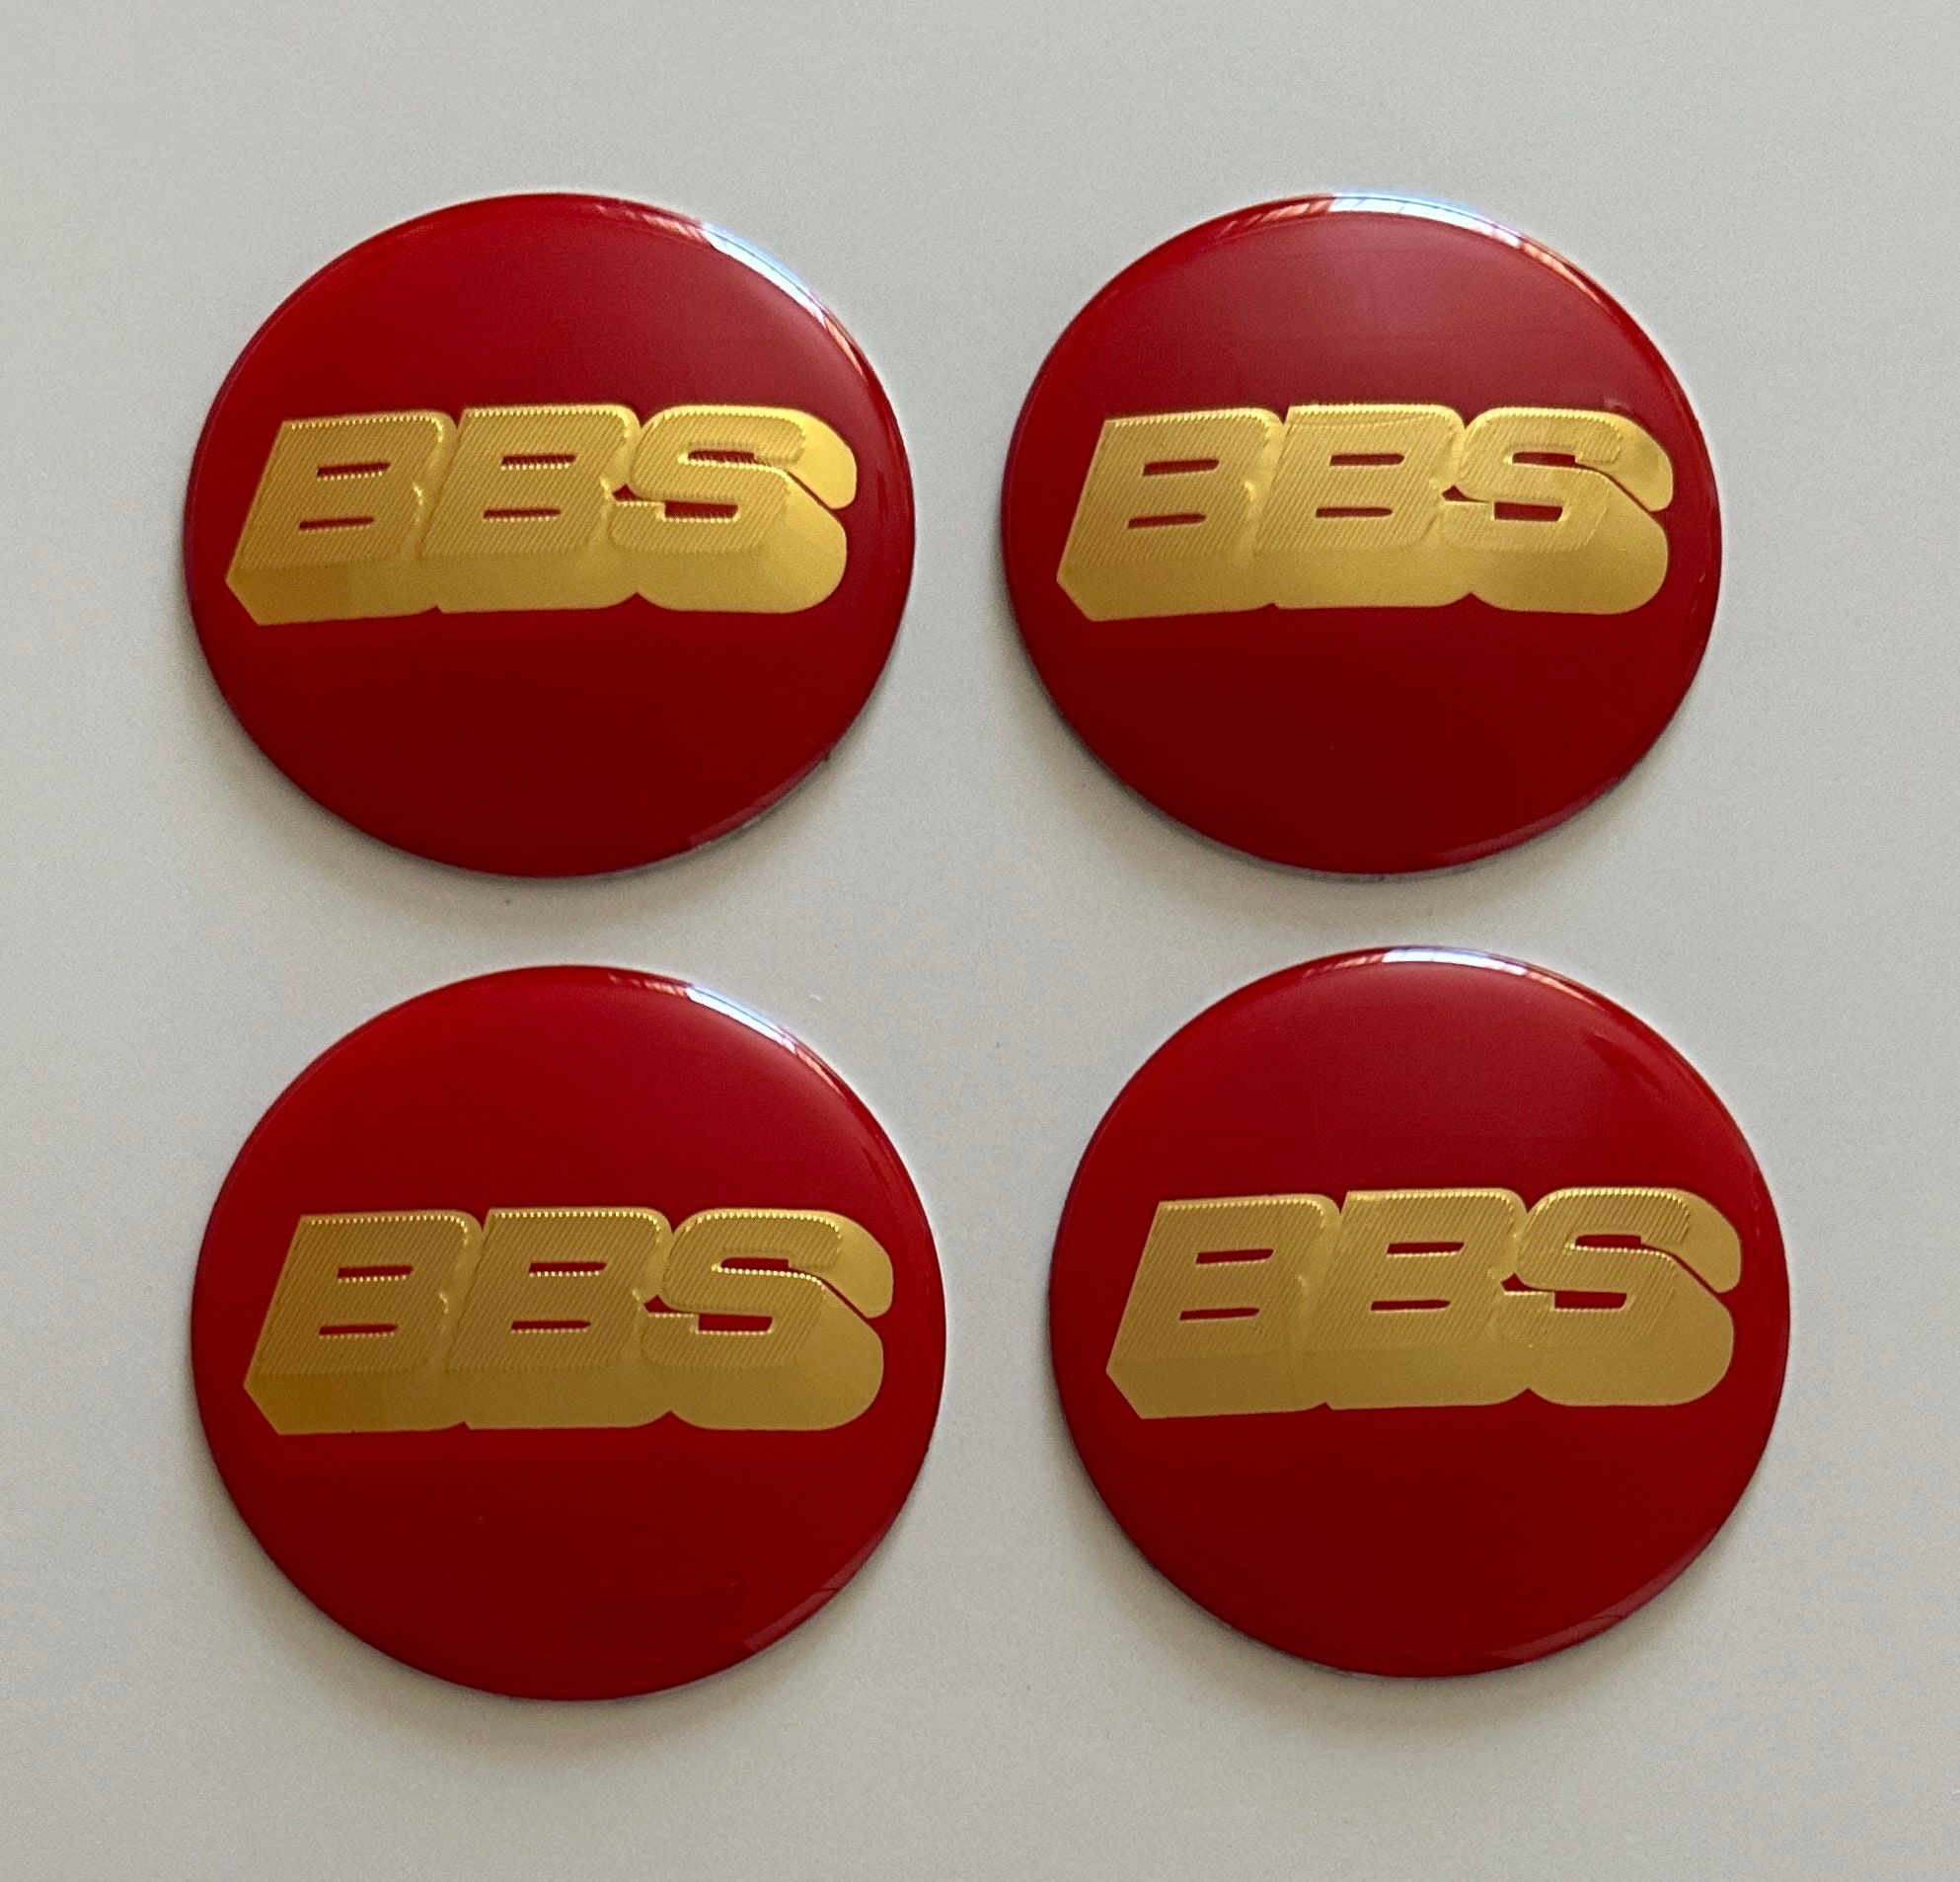  BBS Aufkleber groß (50x210 mm) rot weiß Auto Tuning  Optik Styling 50 Jahre BBS